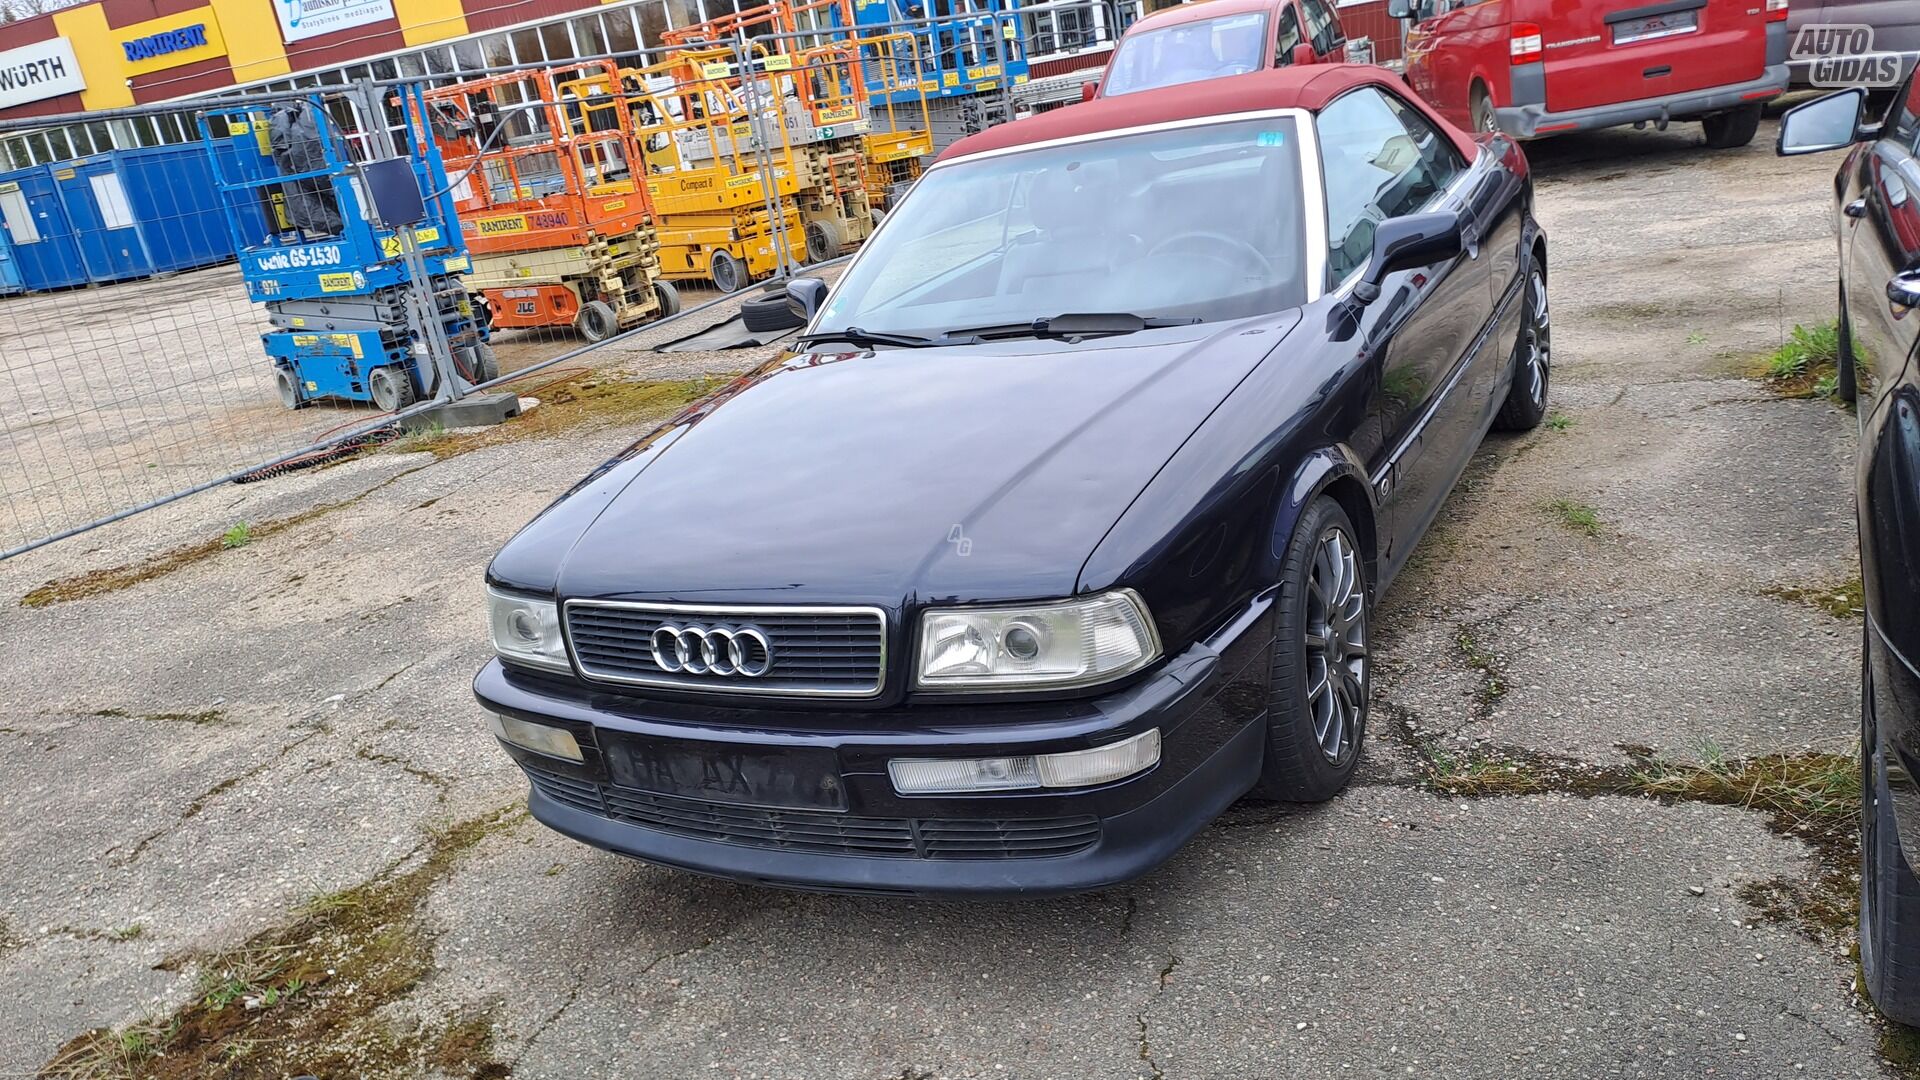 Audi 80 1996 y Convertible